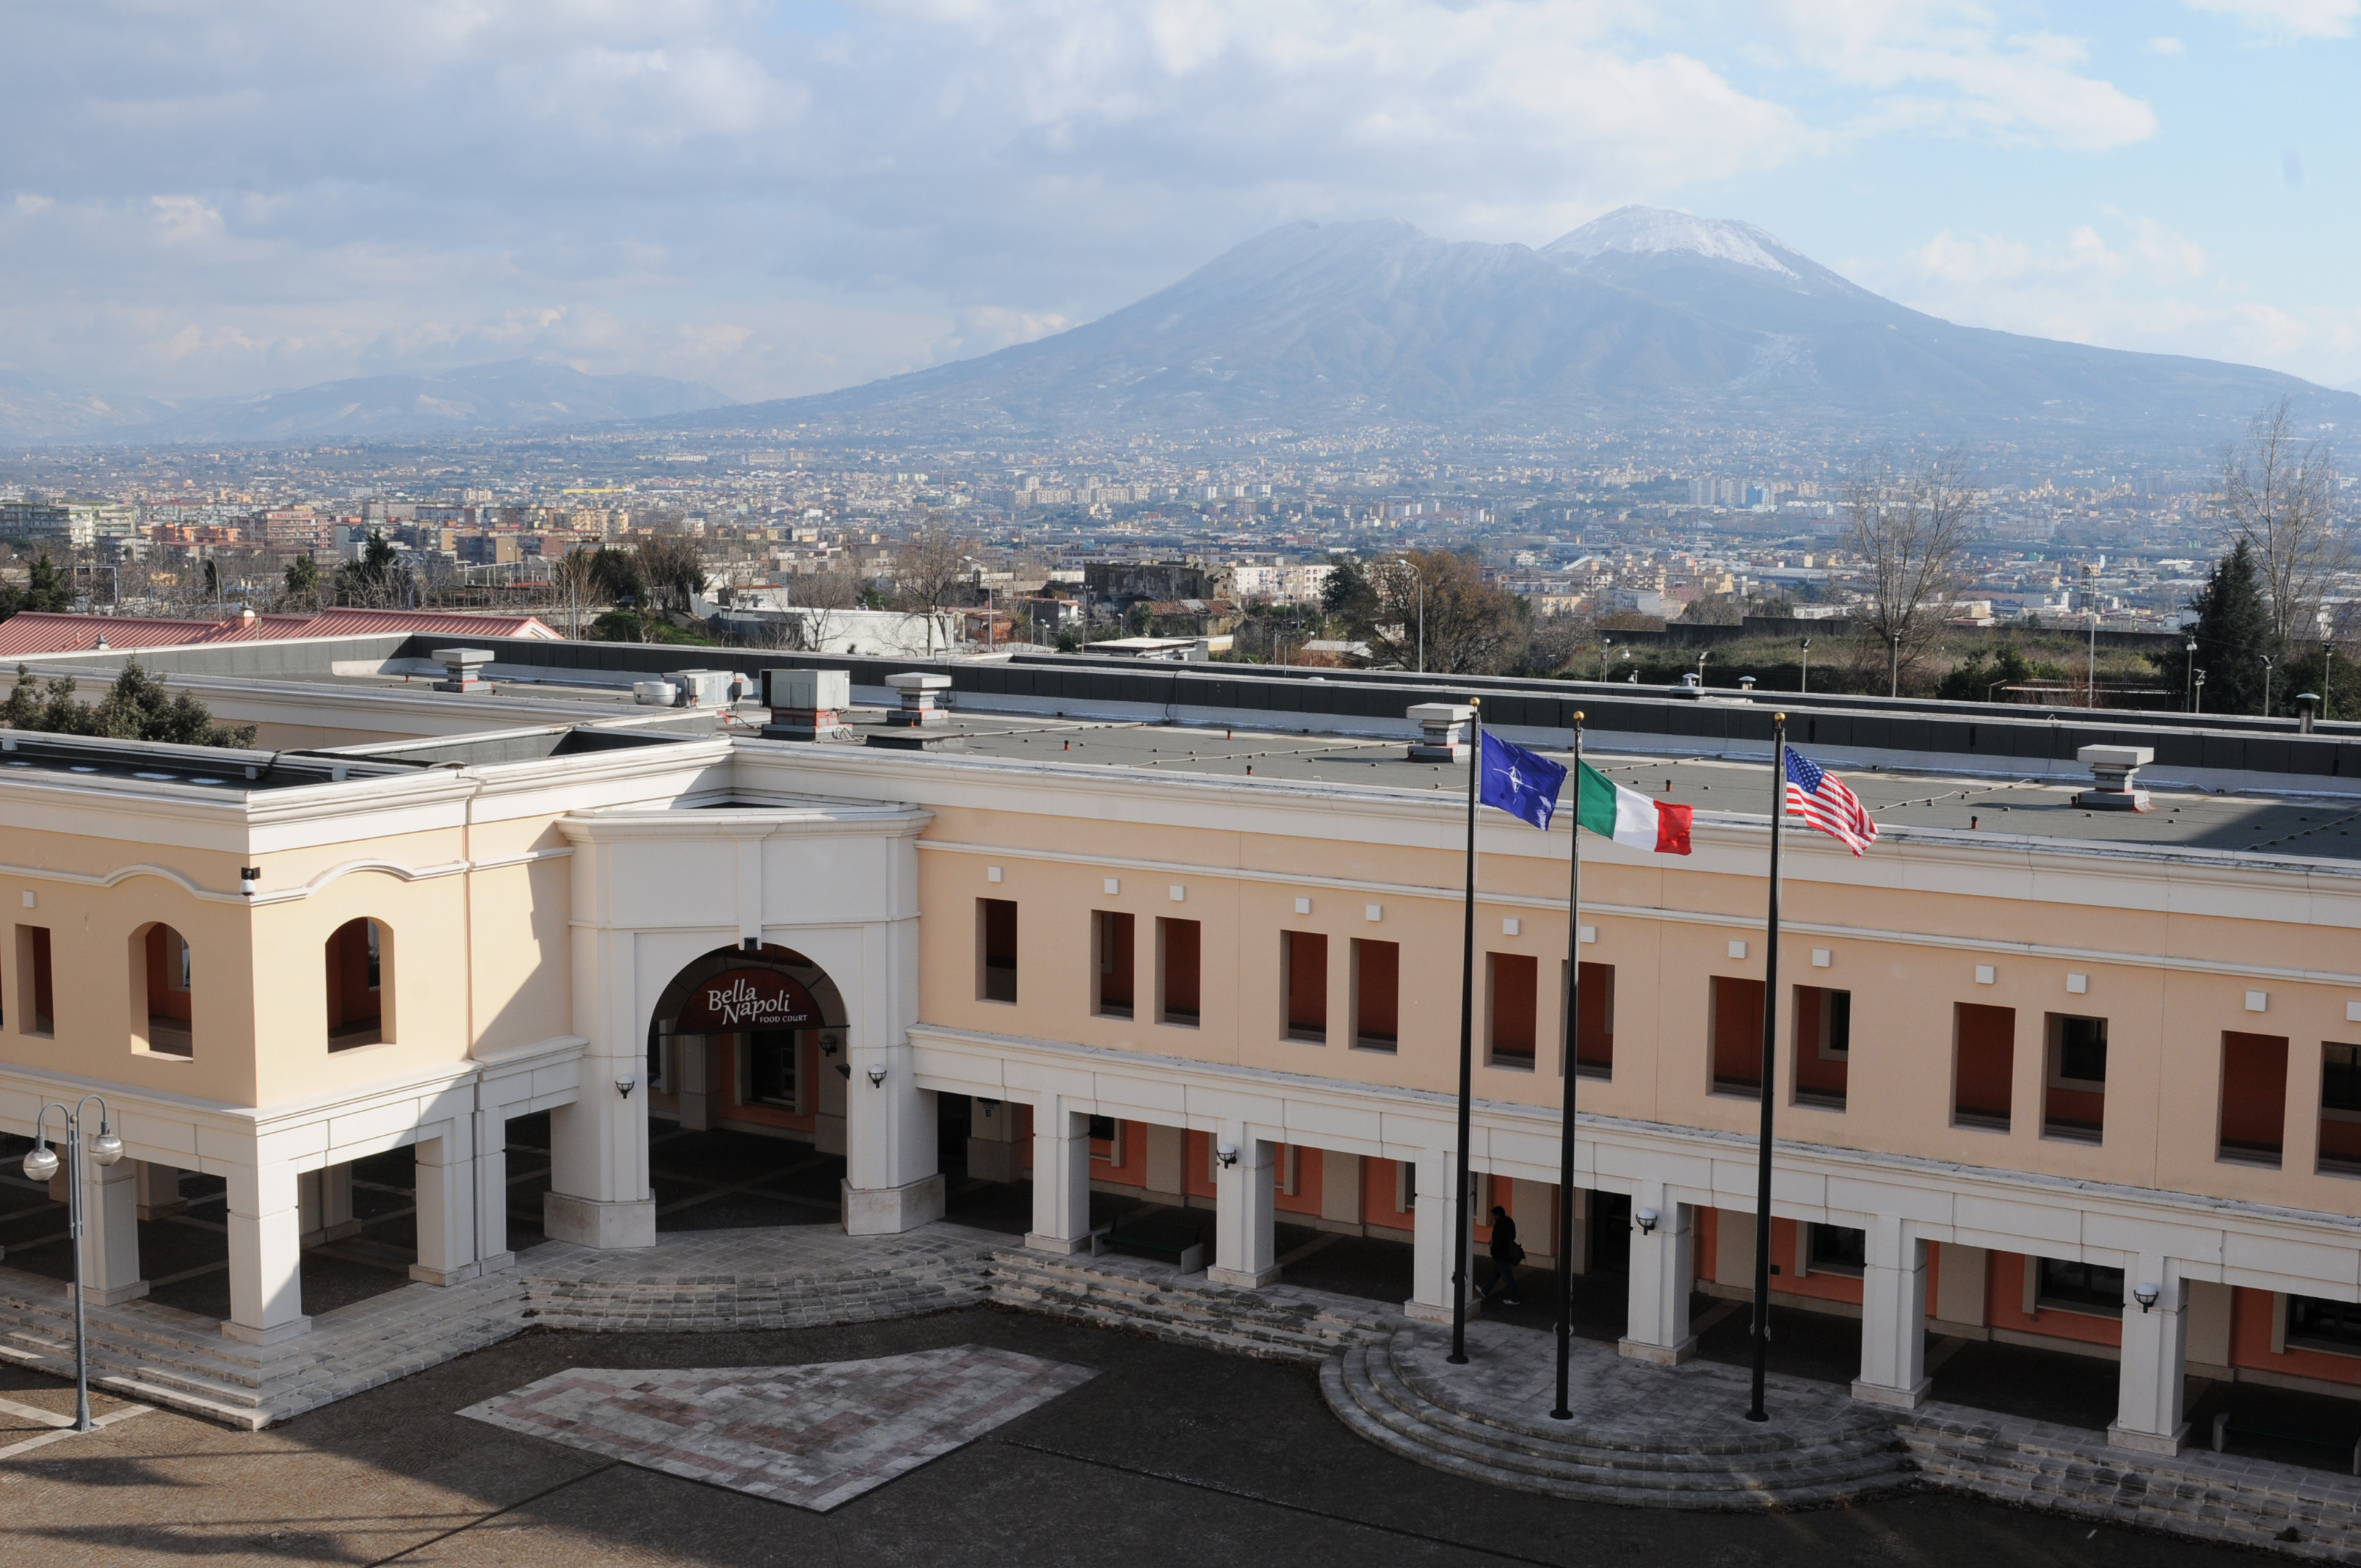 Capodichino Piazza with Mount Vesuvius in background